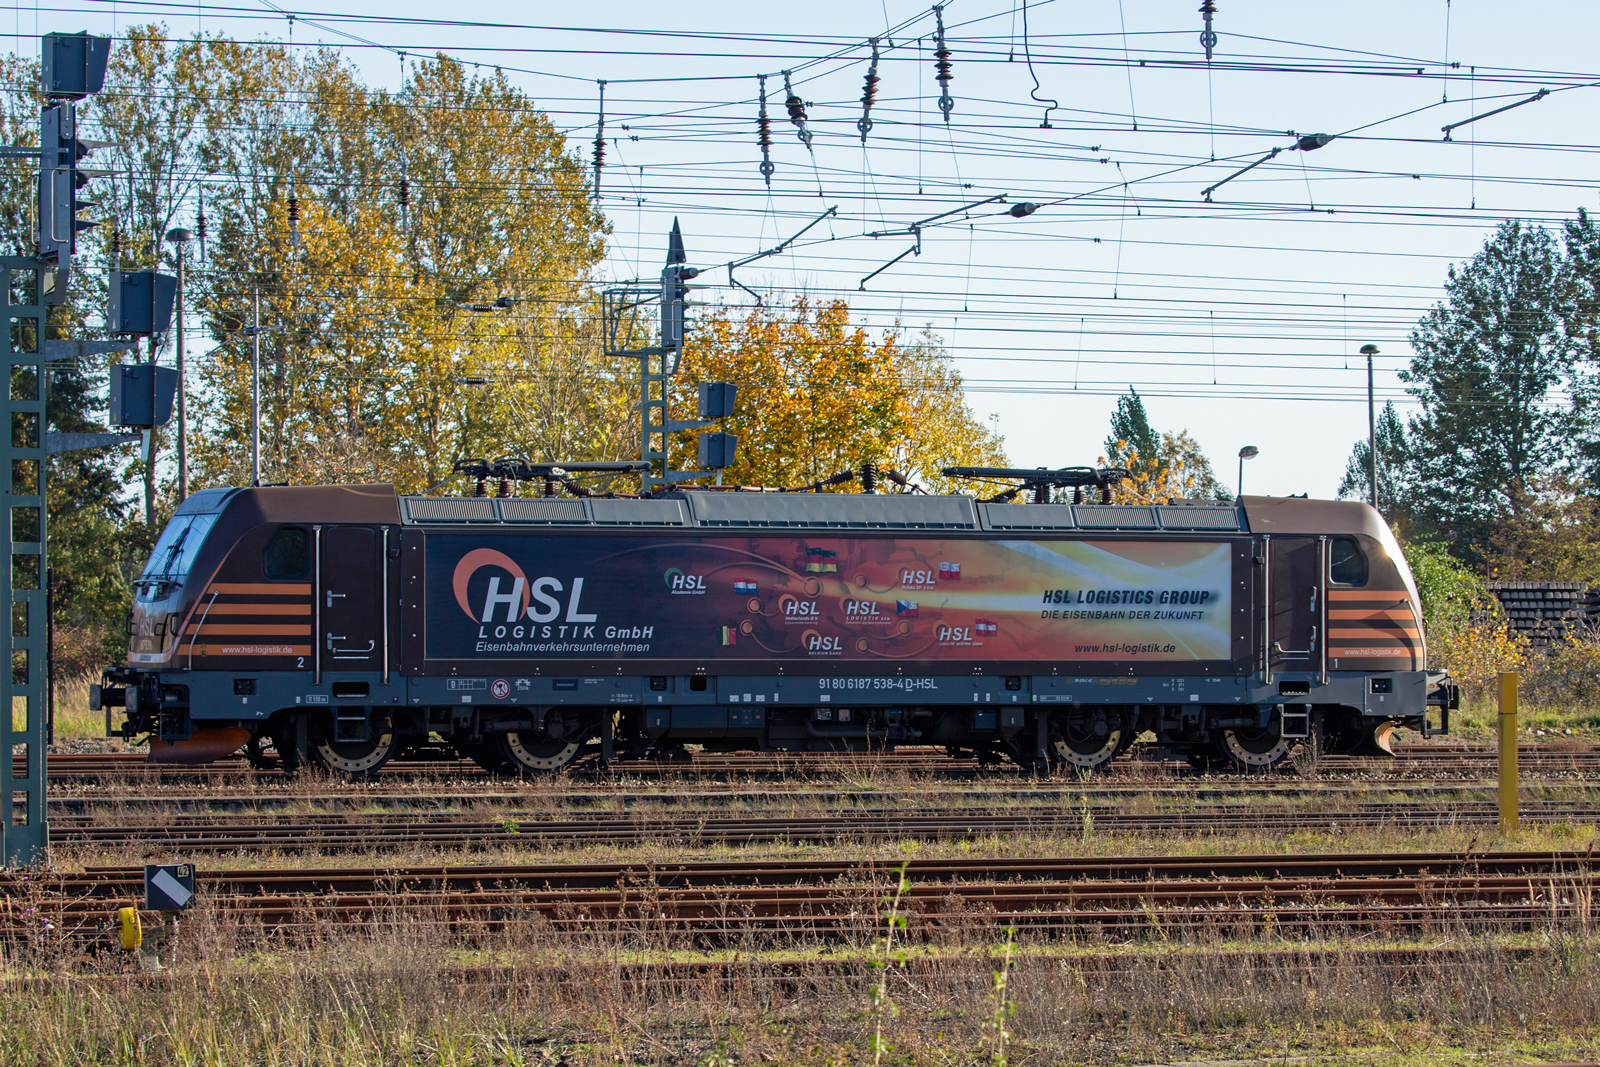 HSL Lok 187 538 farblich passend zu den  herbstlichen Farben auf dem Bahnhof Neustrelitz. - 26.10.2022 - Am Bahnhofsweg aufgenommen.